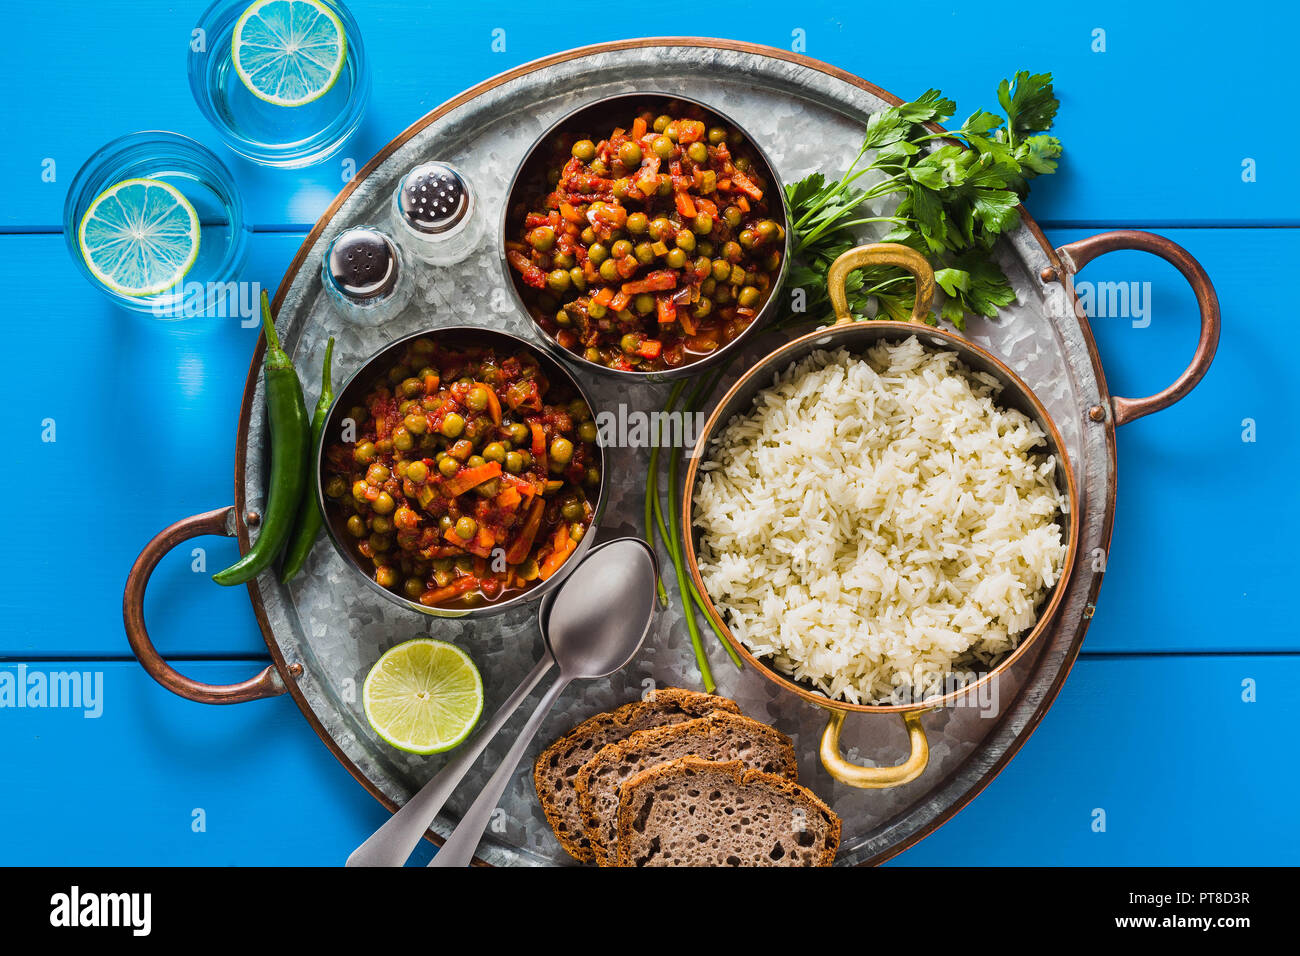 Vegan curry mit grünen Erbsen und Basmatireis auf einem blauen Tisch Tablett serviert, gesunde indische Speisen und Limonade in Gläsern Stockfoto